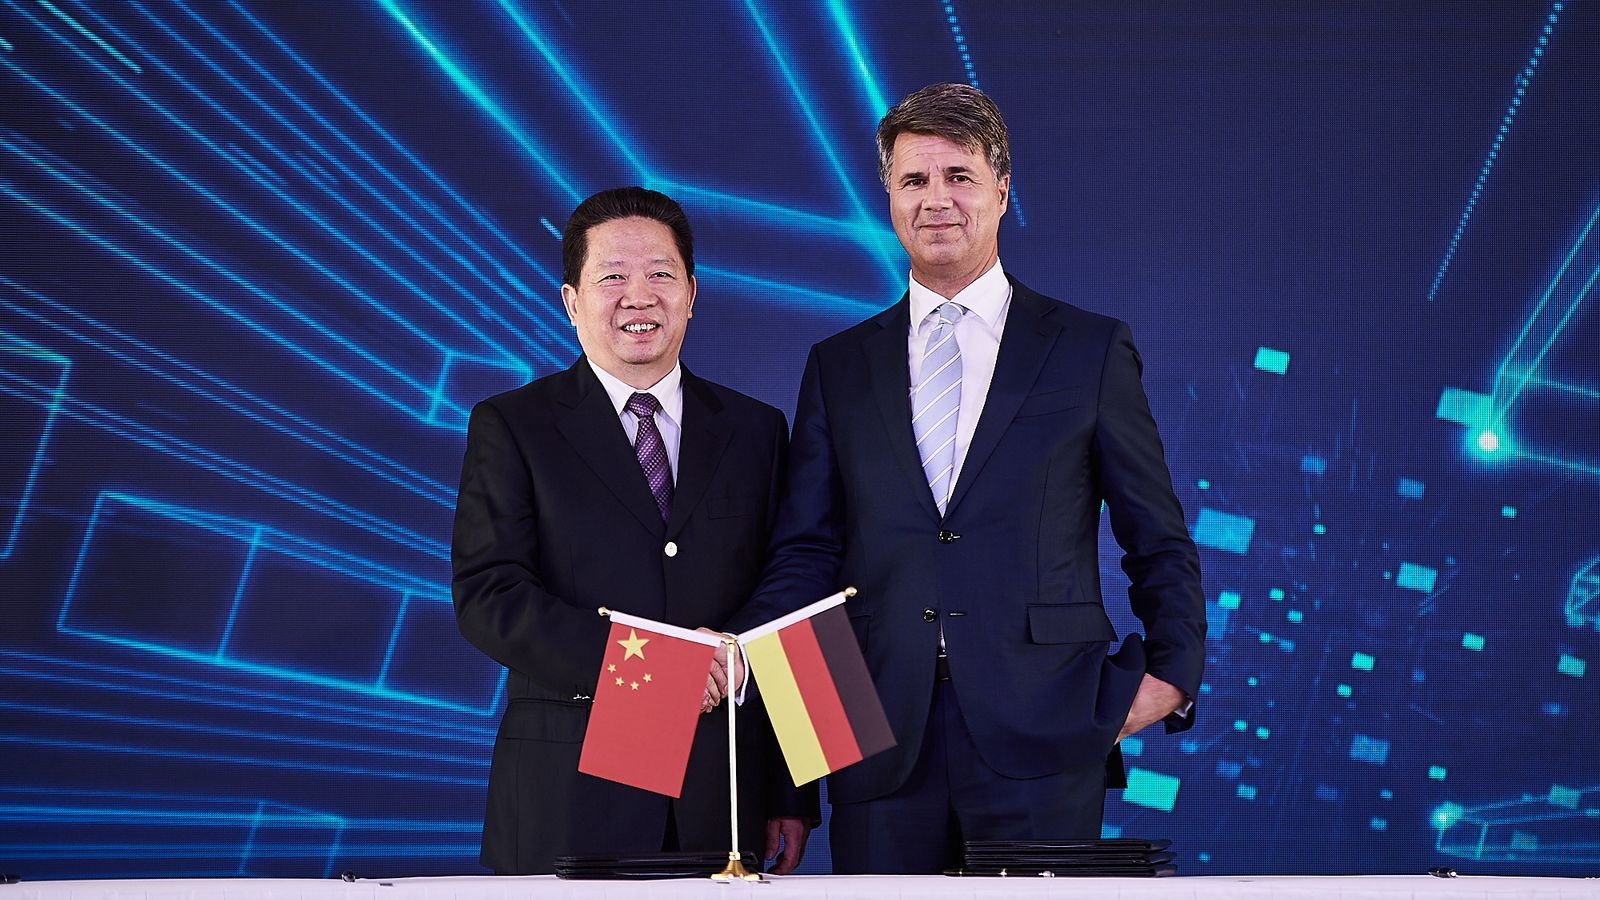 Региональный секретарь Компартии Китая в провинции Ляонин Чен Киуфа и глава BMW Харальд Крюгер жмут руки в знак достижения соглашения о сделке в рамках совместного предприятия BBA.